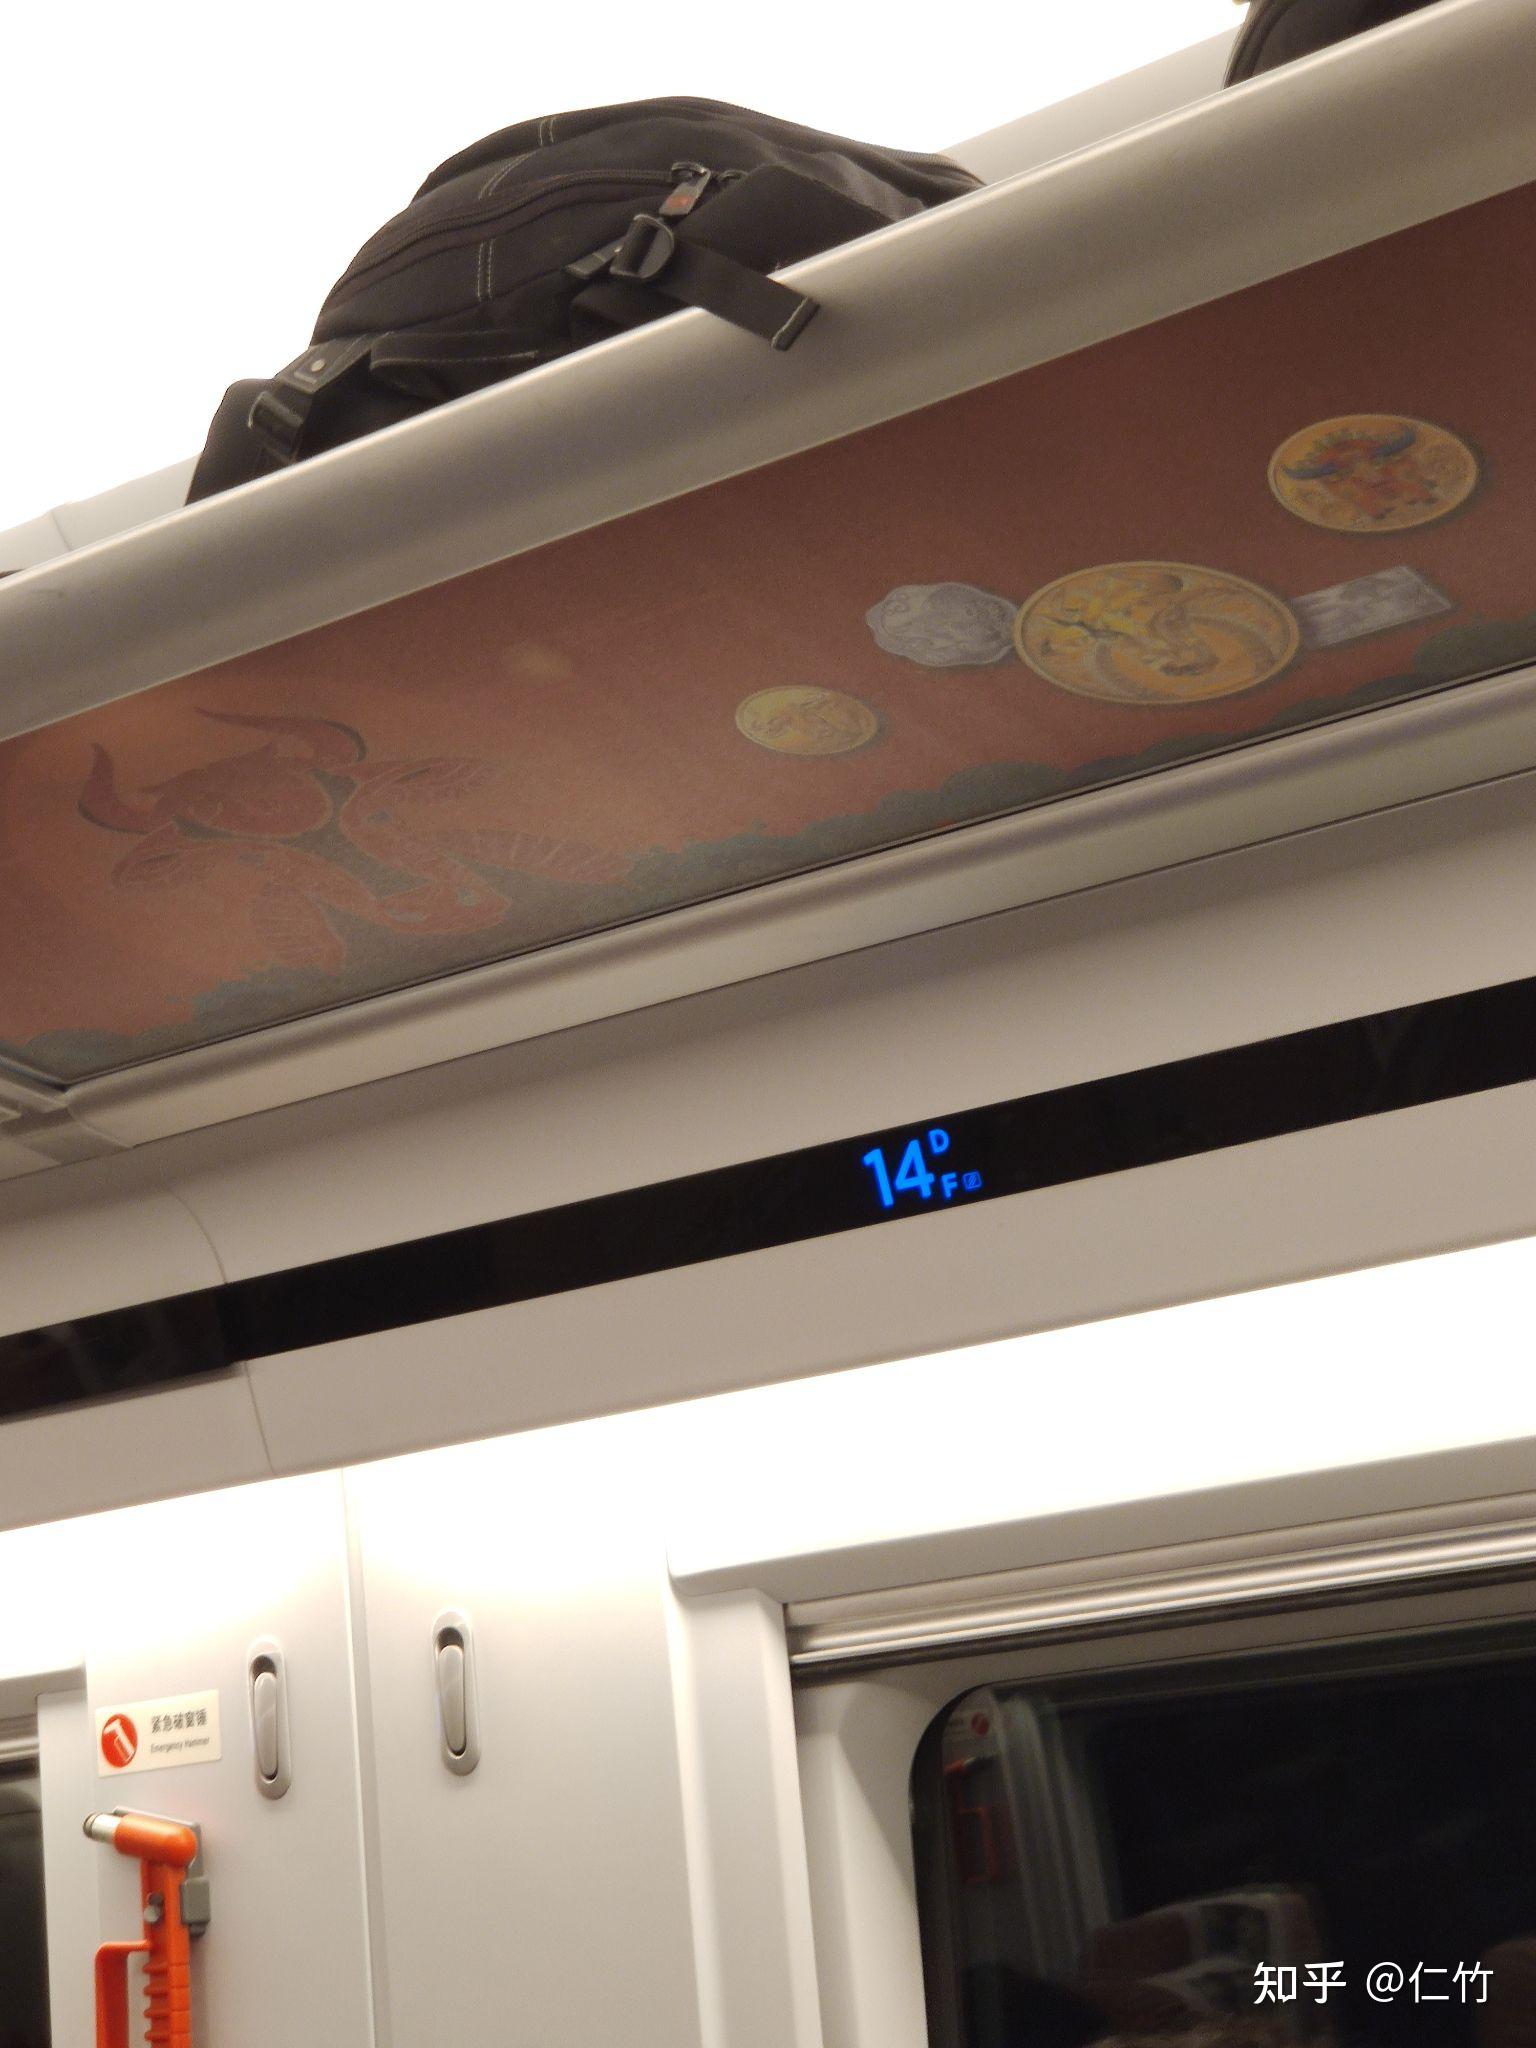 为什高铁上用一个框里三条杠的符号表示靠窗的座位第一反应容易让人